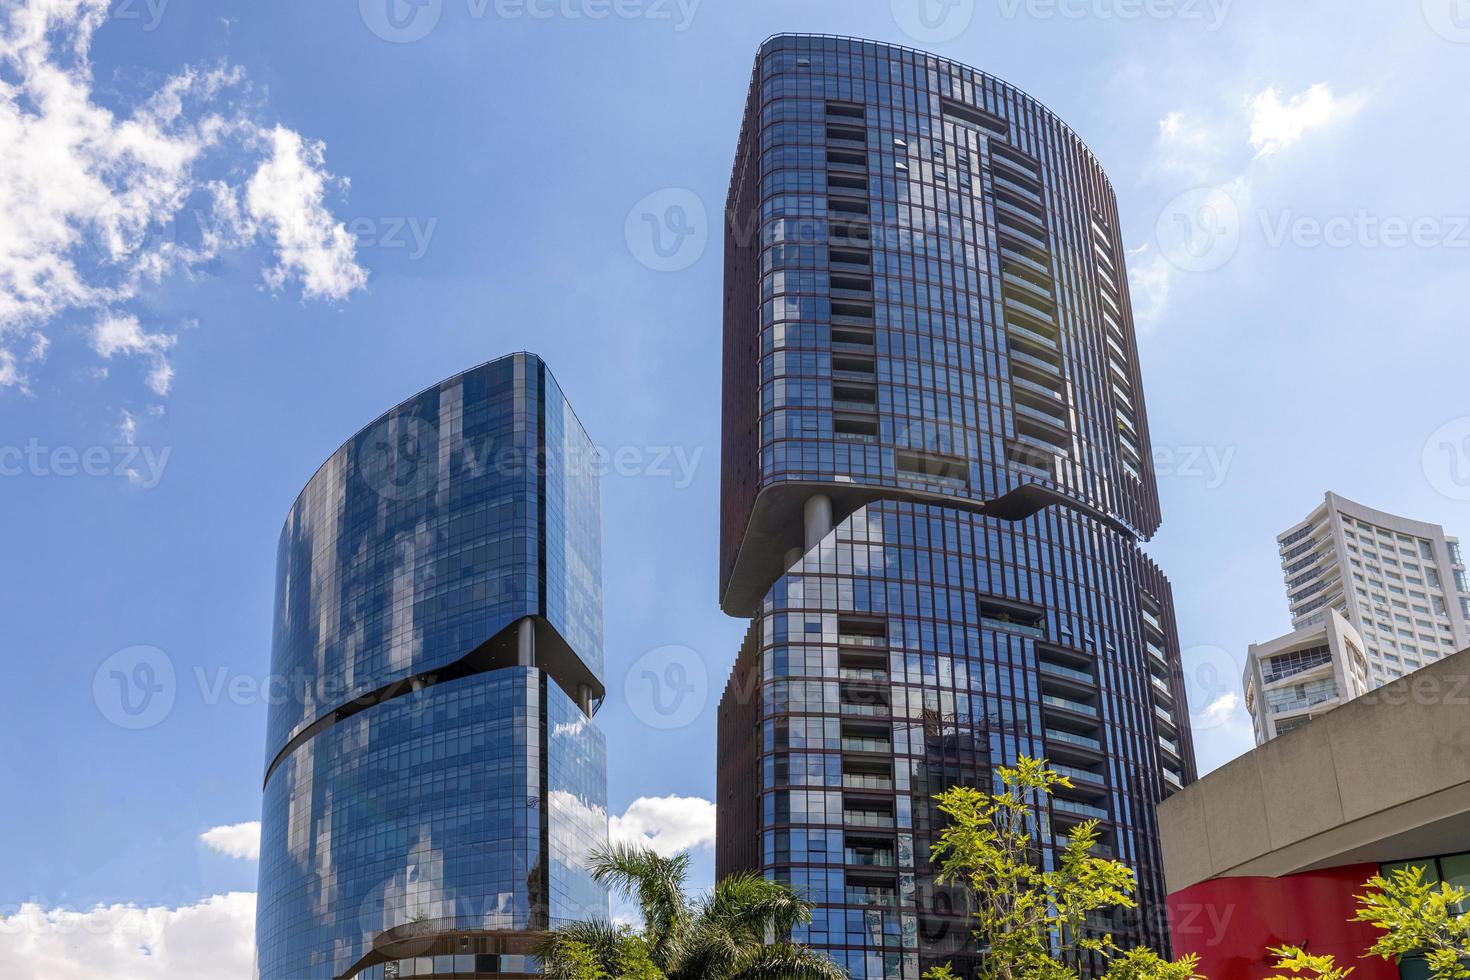 zapopan modernt finanscentrum med trendiga köpcentra, banker, kontor, finansiella institutioner och restauranger foto